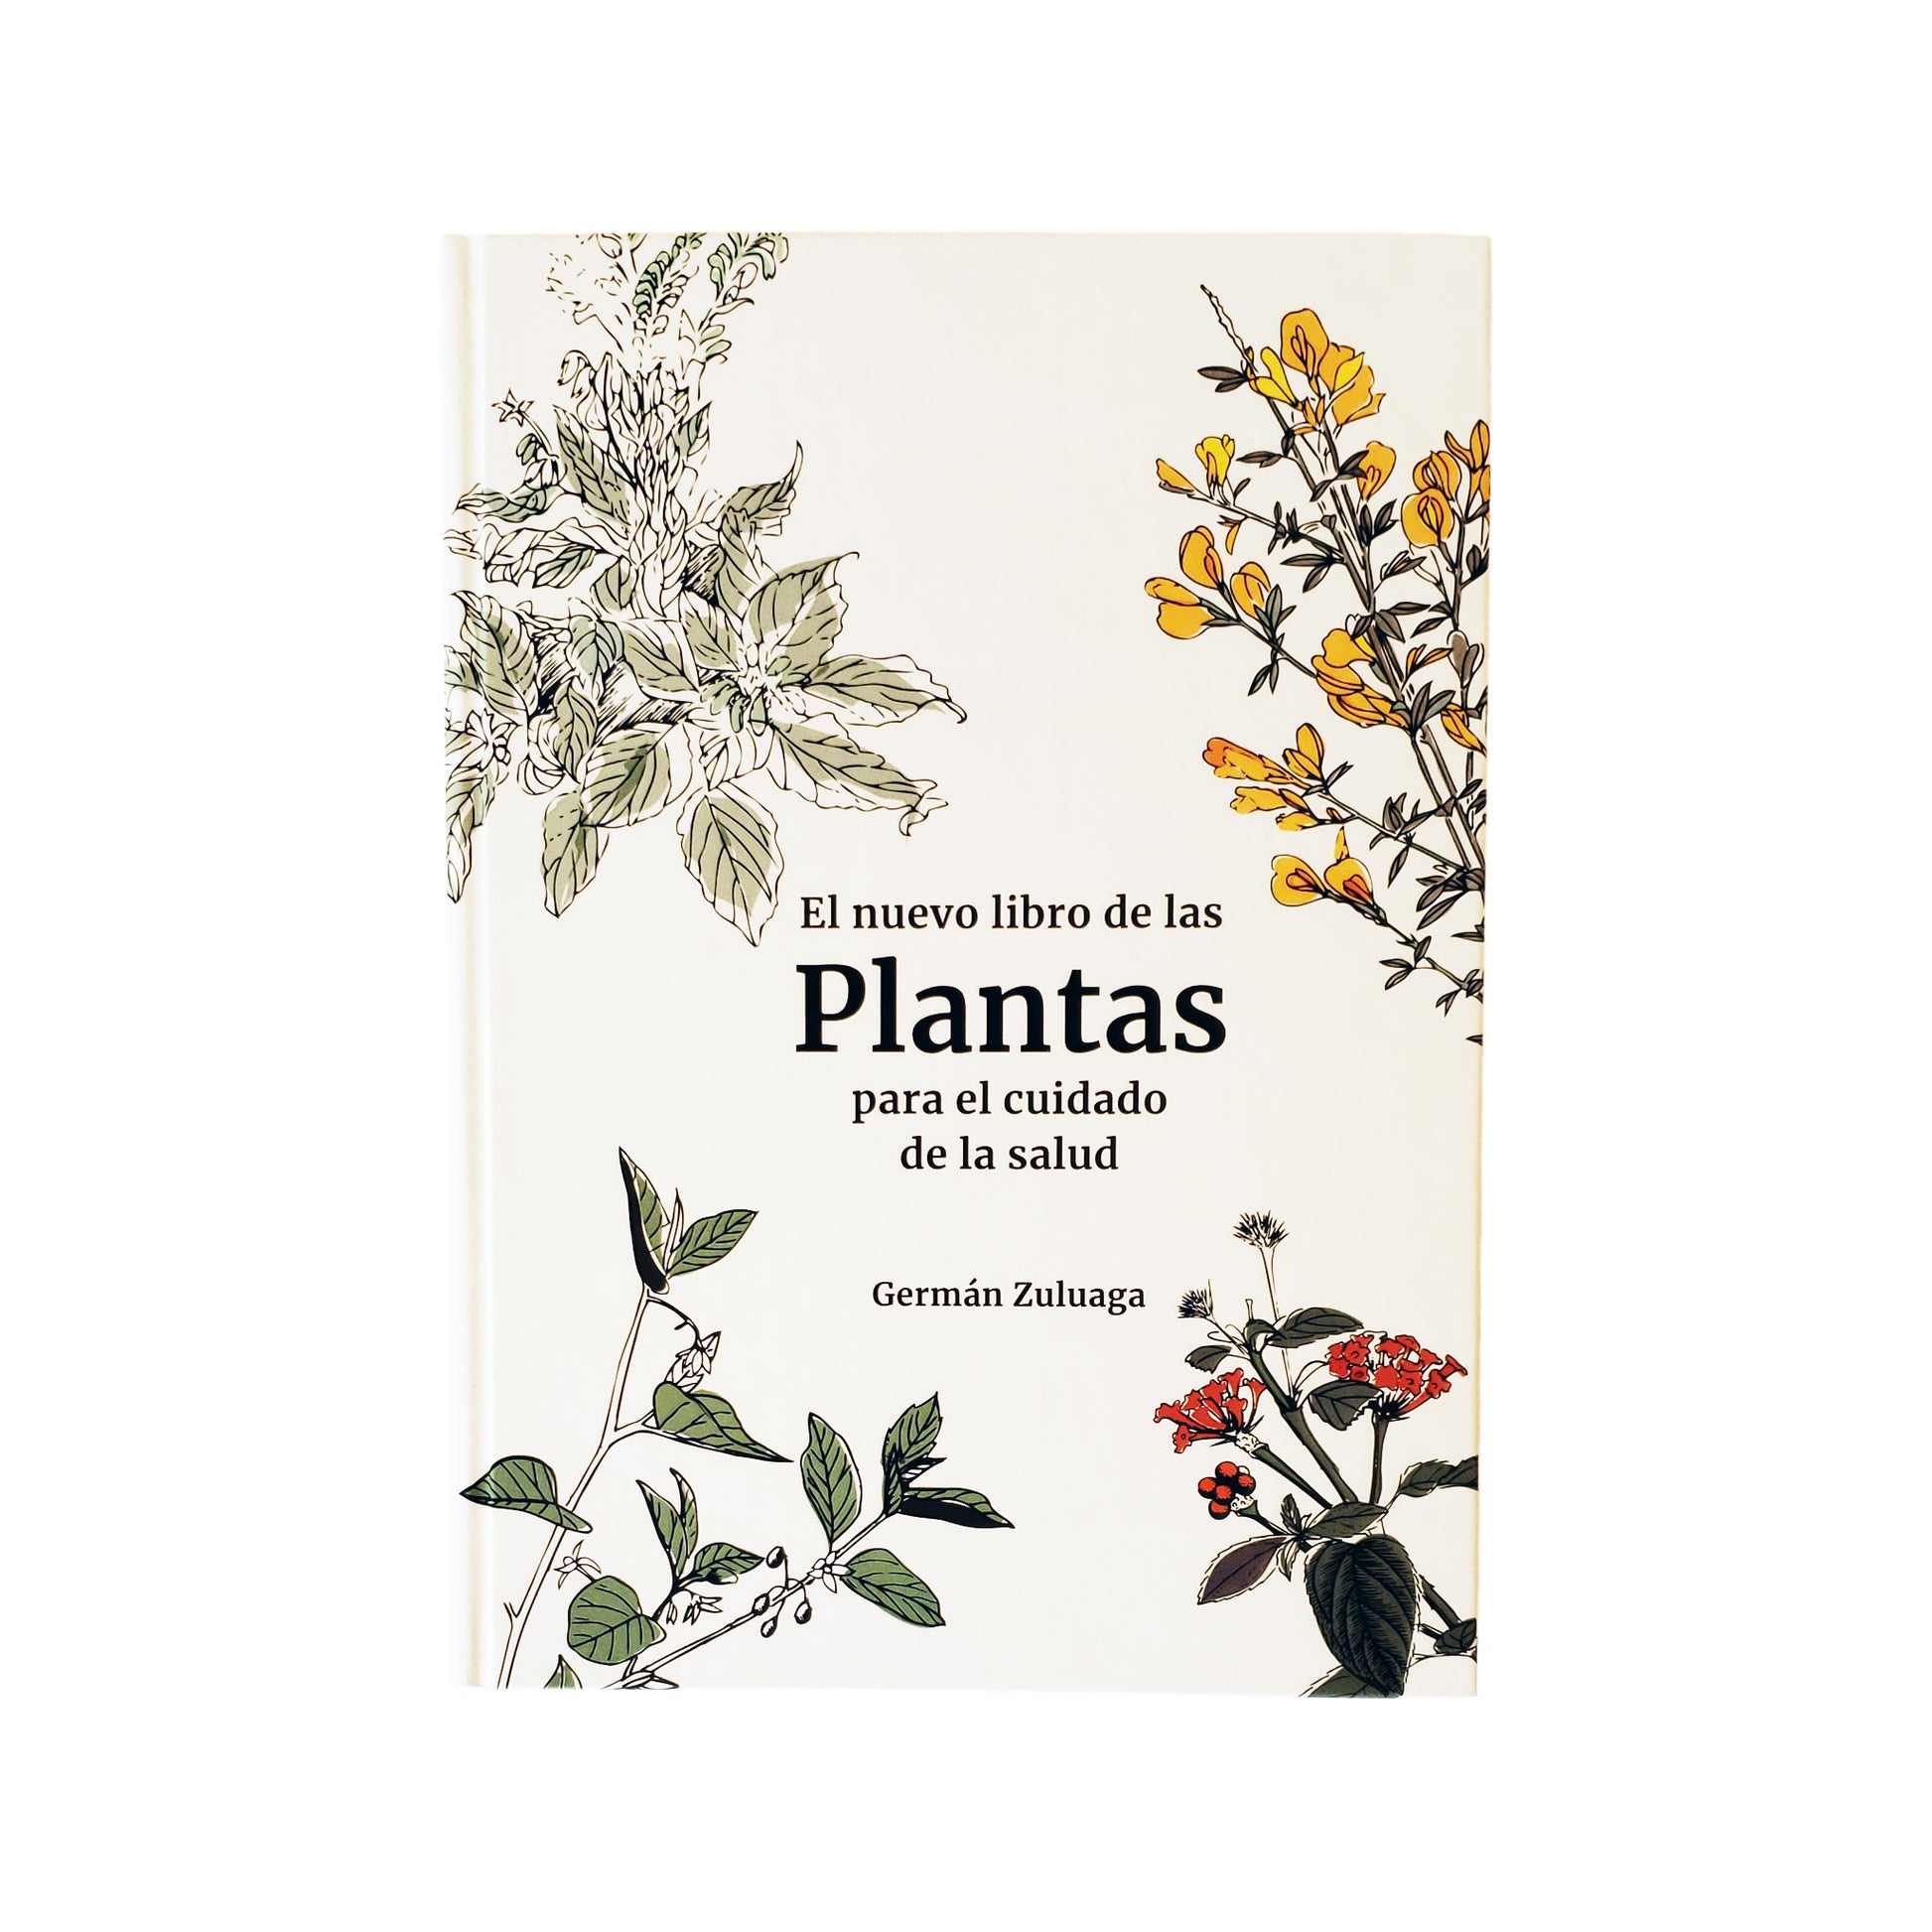 El nuevo libro de las plantas para el cuidado de la salud, Germán Zuluaga en hardback Hogar - La Tortuga y La Liebre Tienda zero waste cero basura Bogota Colombia